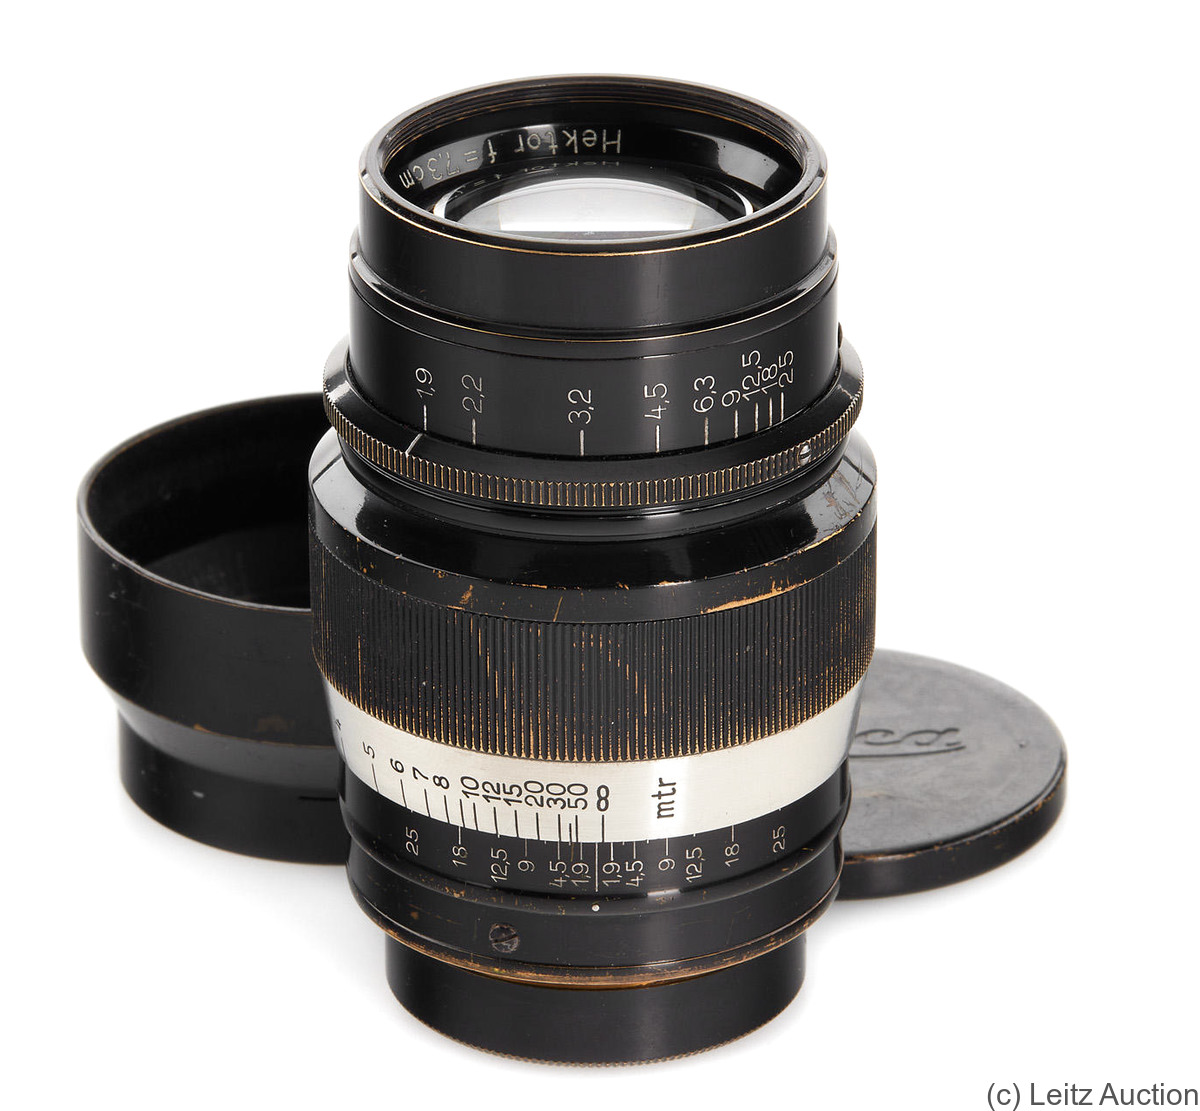 Leitz: 73mm (7.3cm) f1.9 Hektor (SM, black/nickel) camera